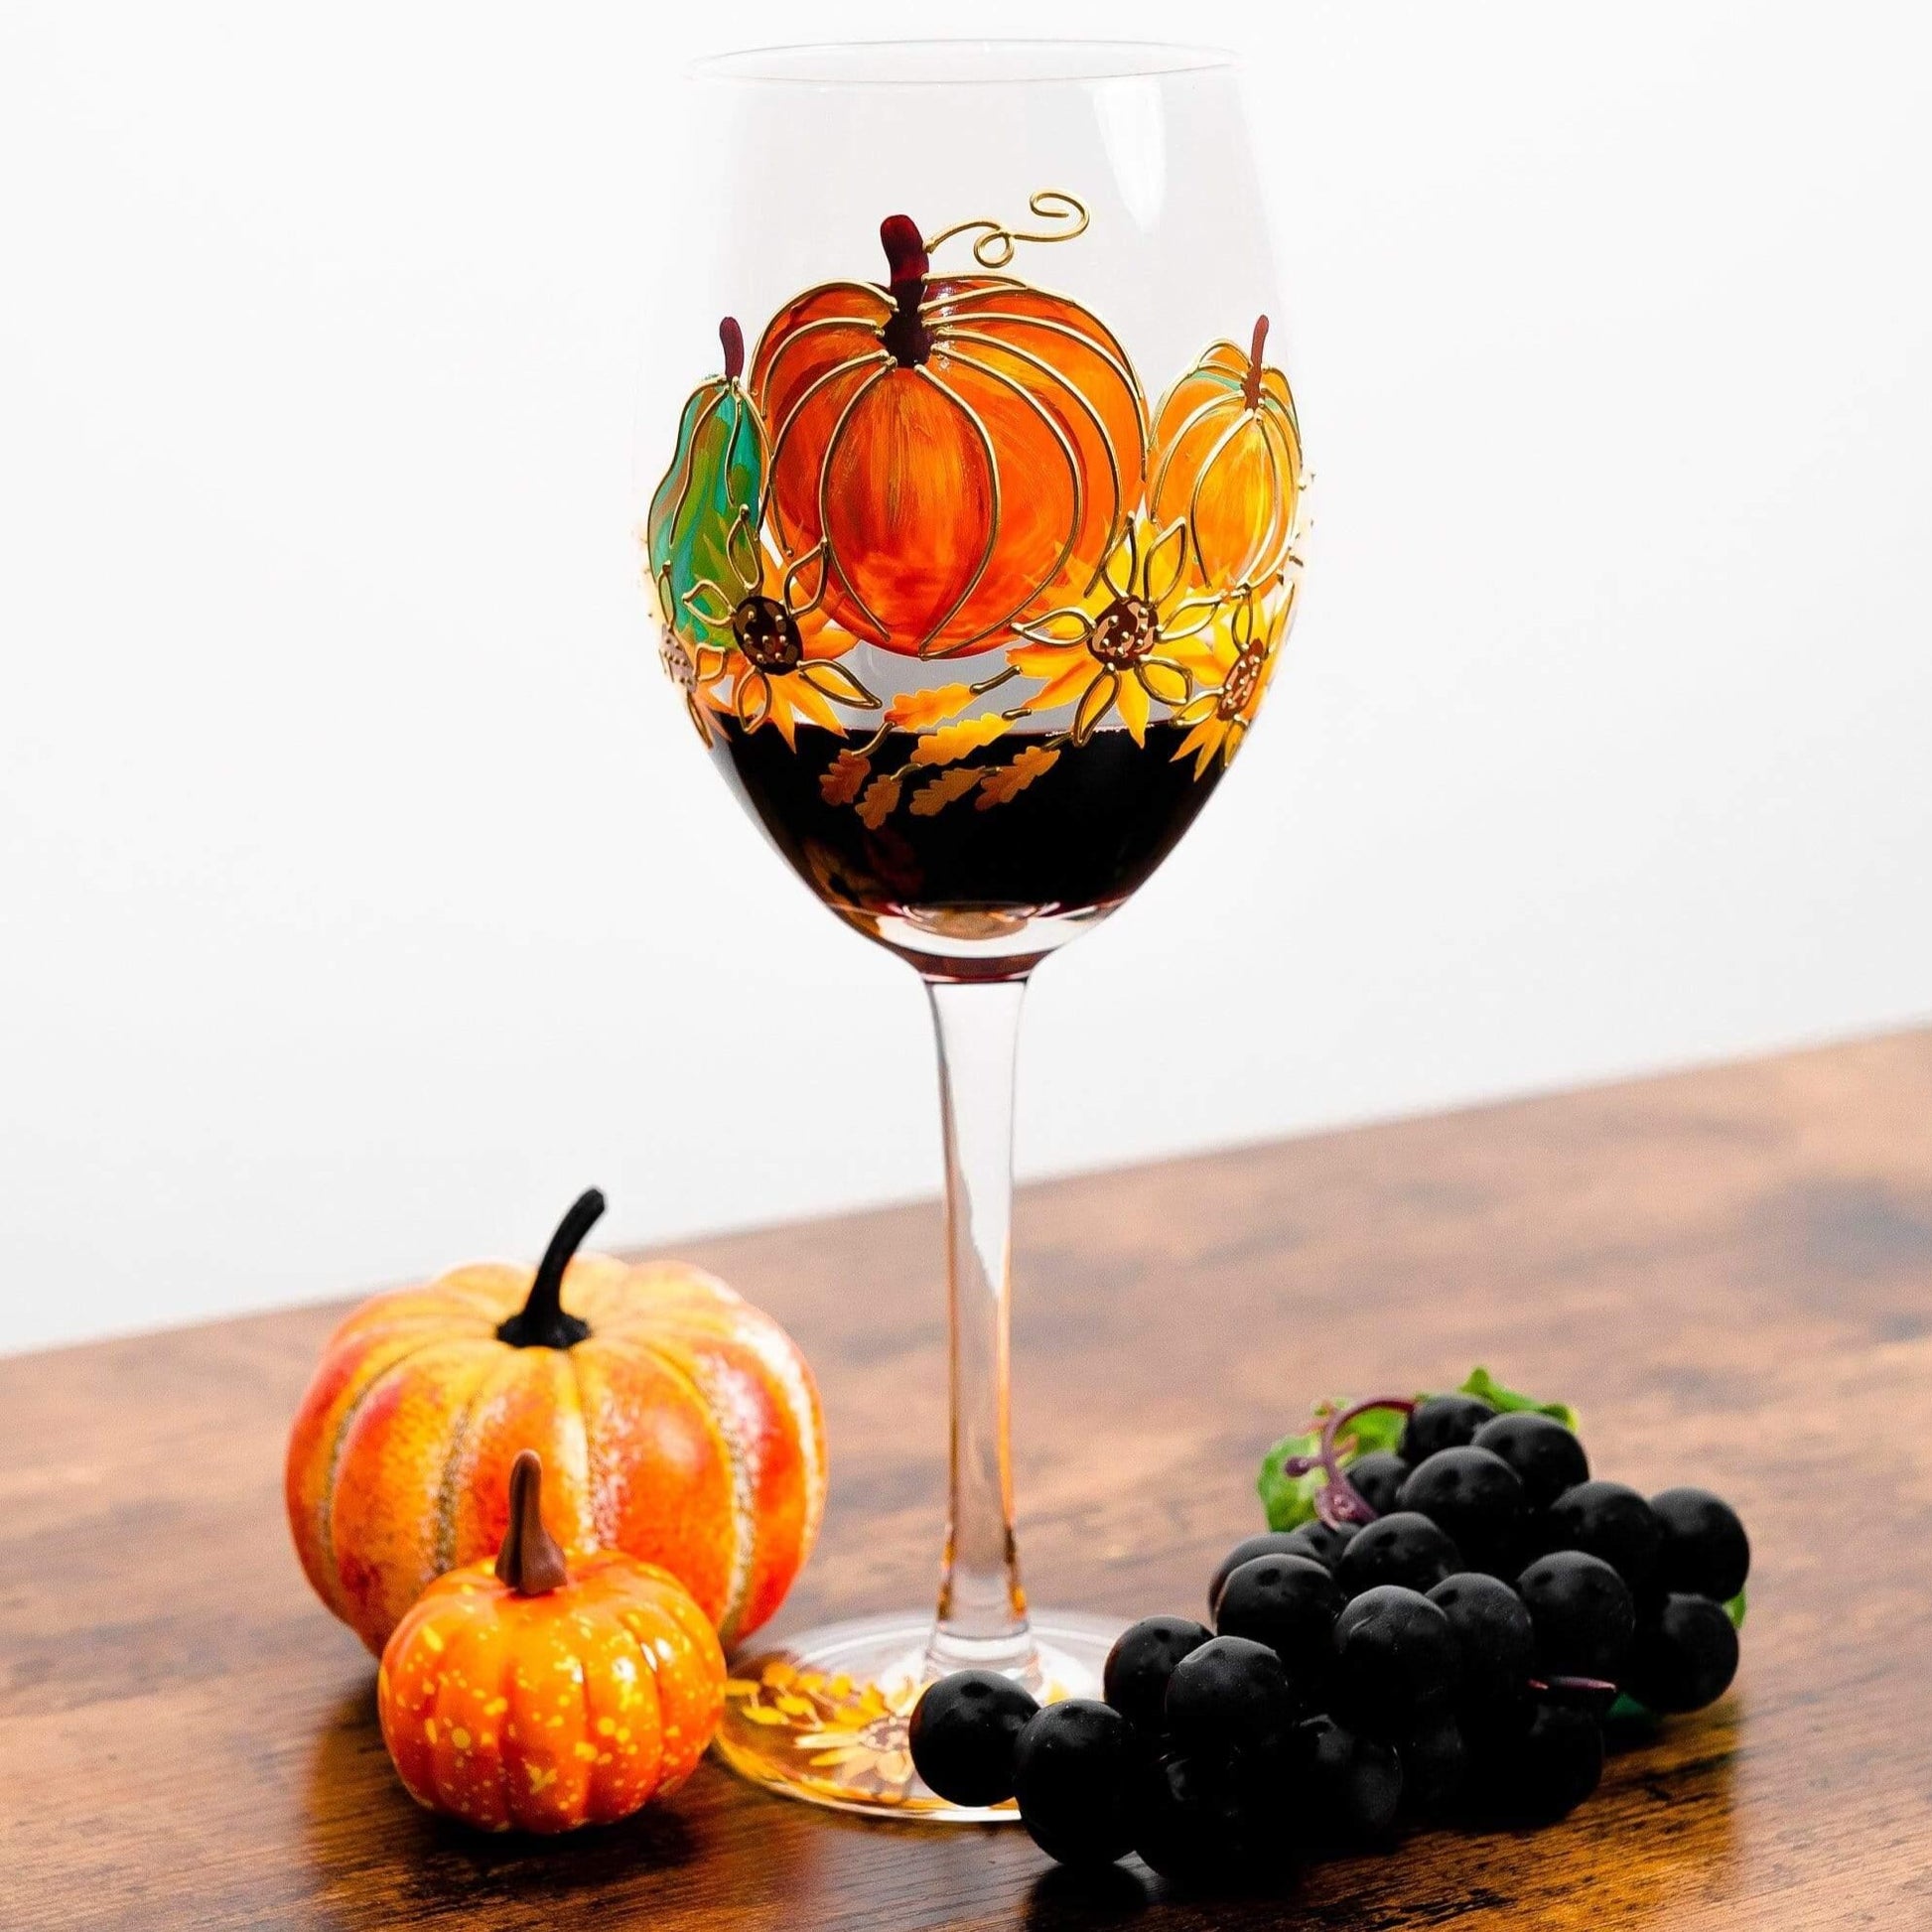 https://jerseyartglass.com/cdn/shop/products/jersey-art-glass-thanksgiving-wine-glasses-set-of-2-thanksgiving-decorations-for-table-fall-wedding-decor-fall-centerpiece-pumpkin-mug-30642910462116.jpg?v=1698342991&width=1946